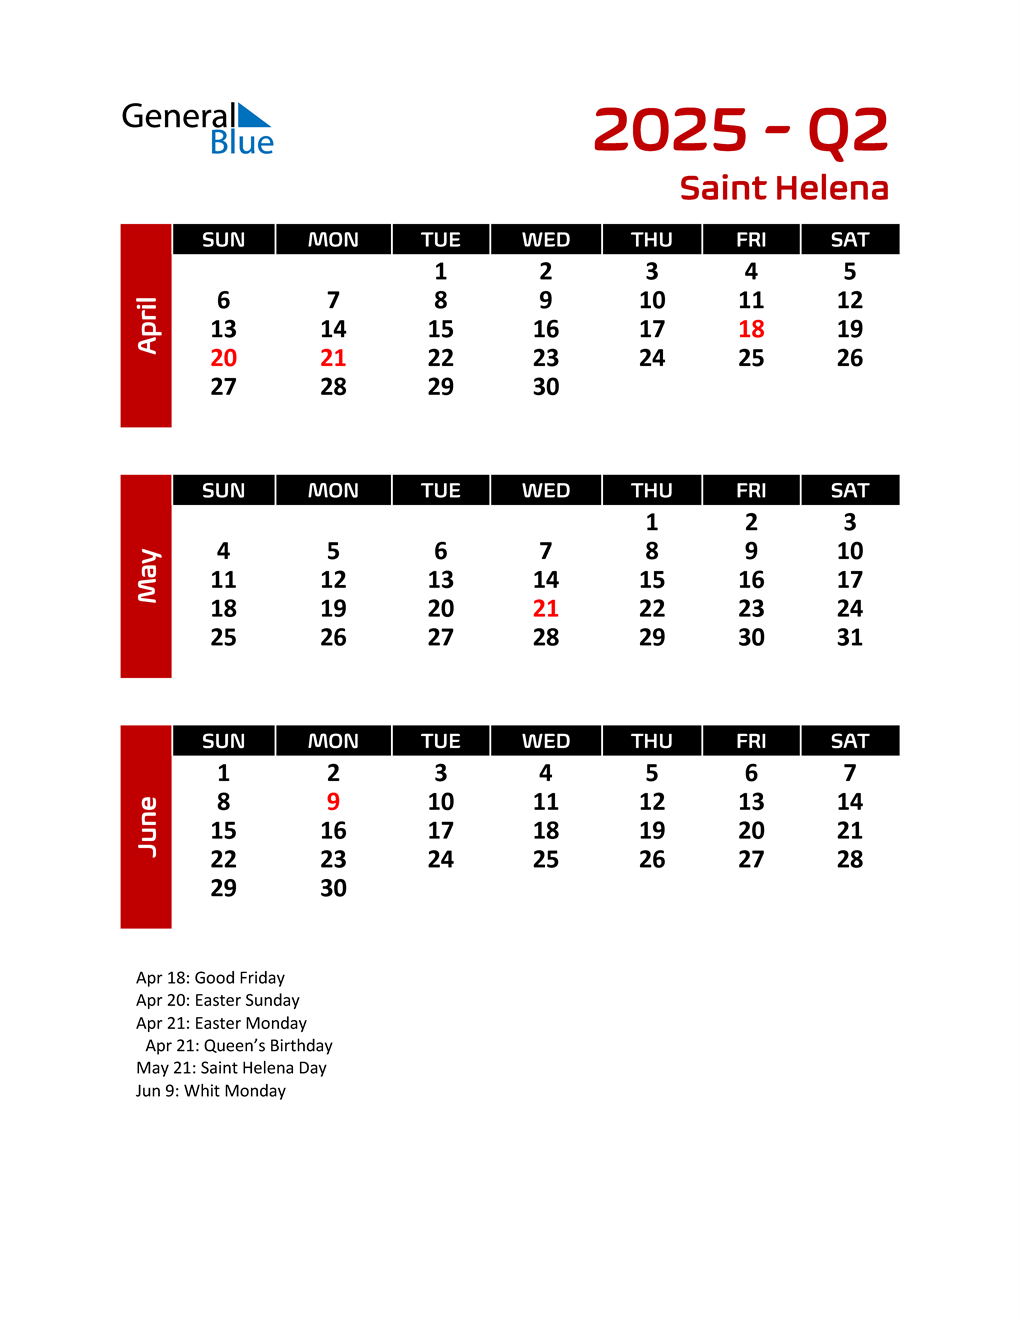 Q2 2025 Quarterly Calendar for Saint Helena